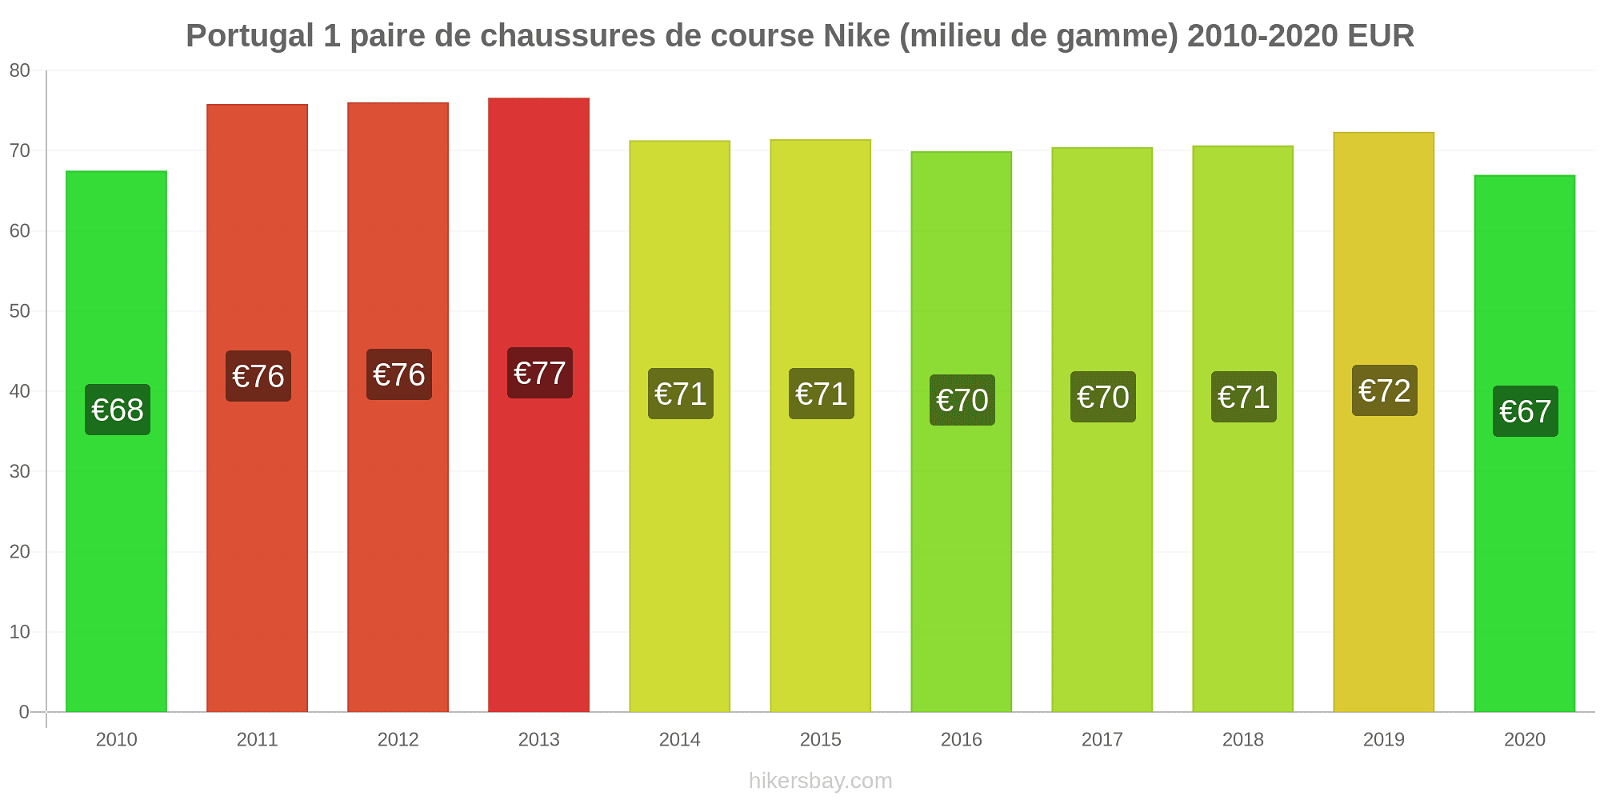 Portugal changements de prix 1 paire de chaussures de course Nike (milieu de gamme) hikersbay.com